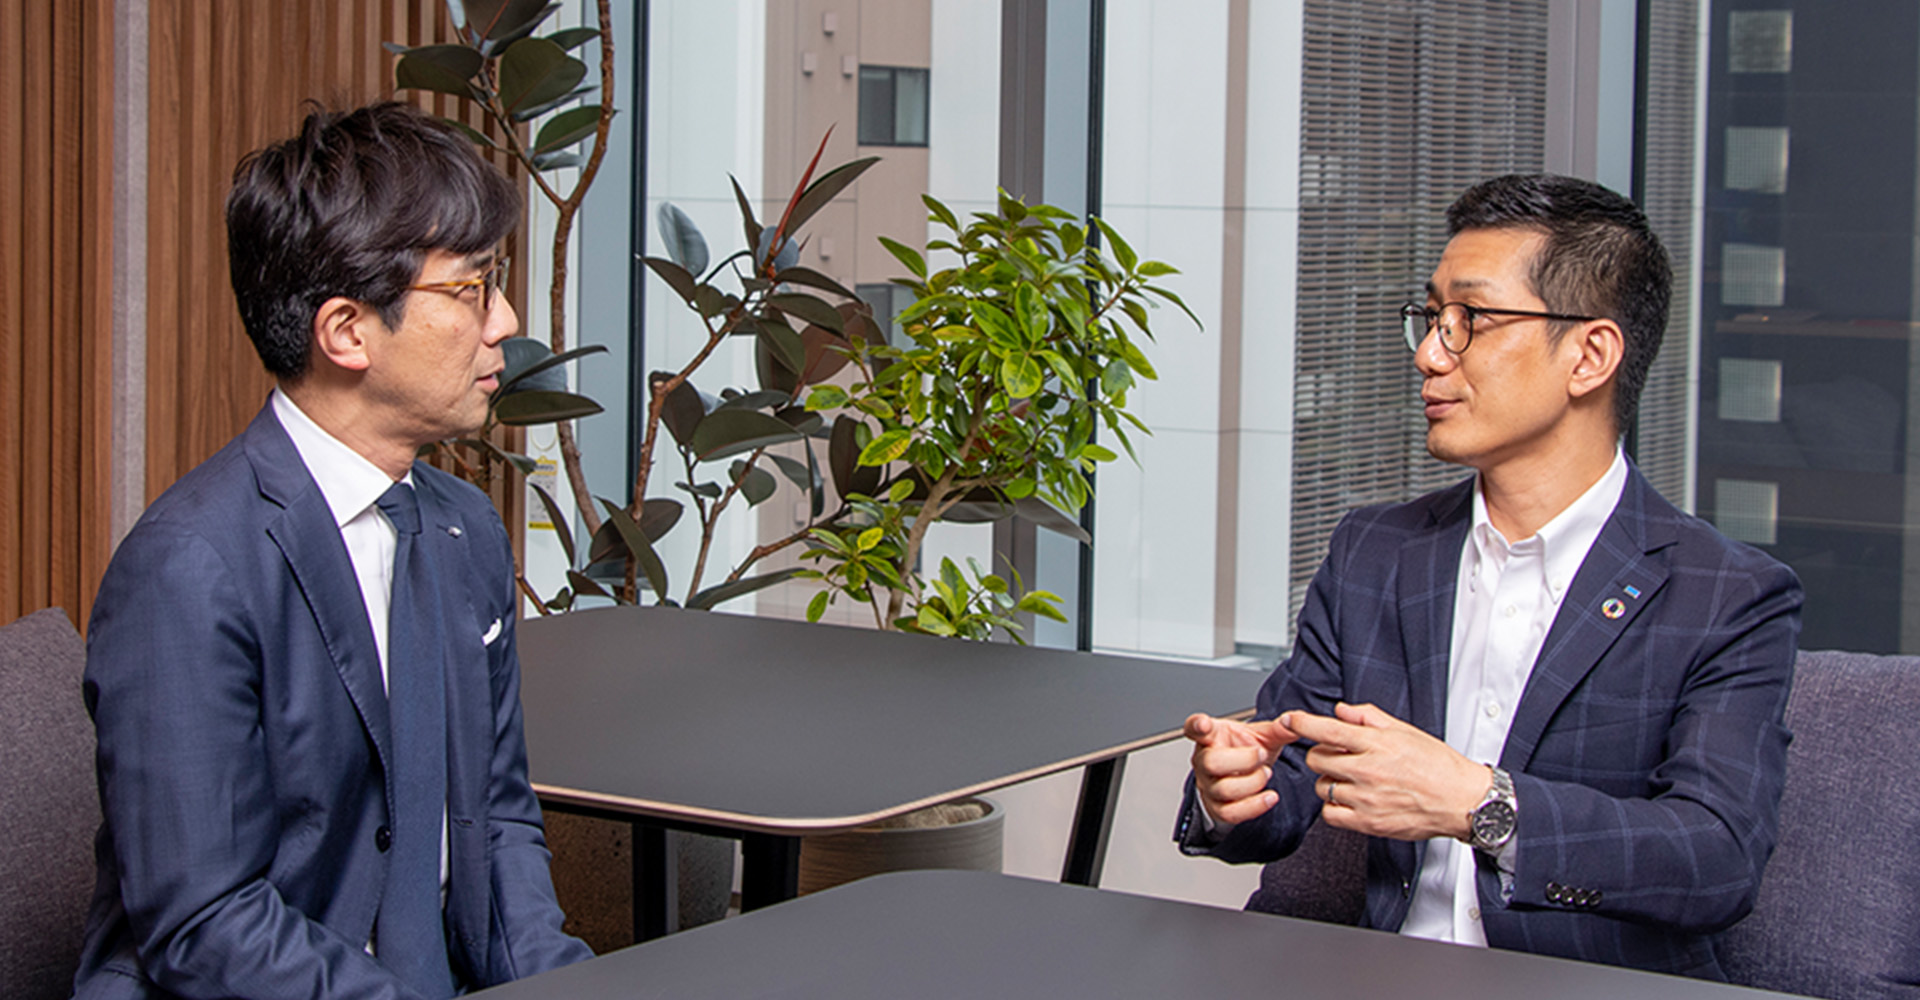 ターニングポイントの経験について質問する蒲生（左）と、ターニングポイントとデジタル事業について解説する田部氏（右）の写真